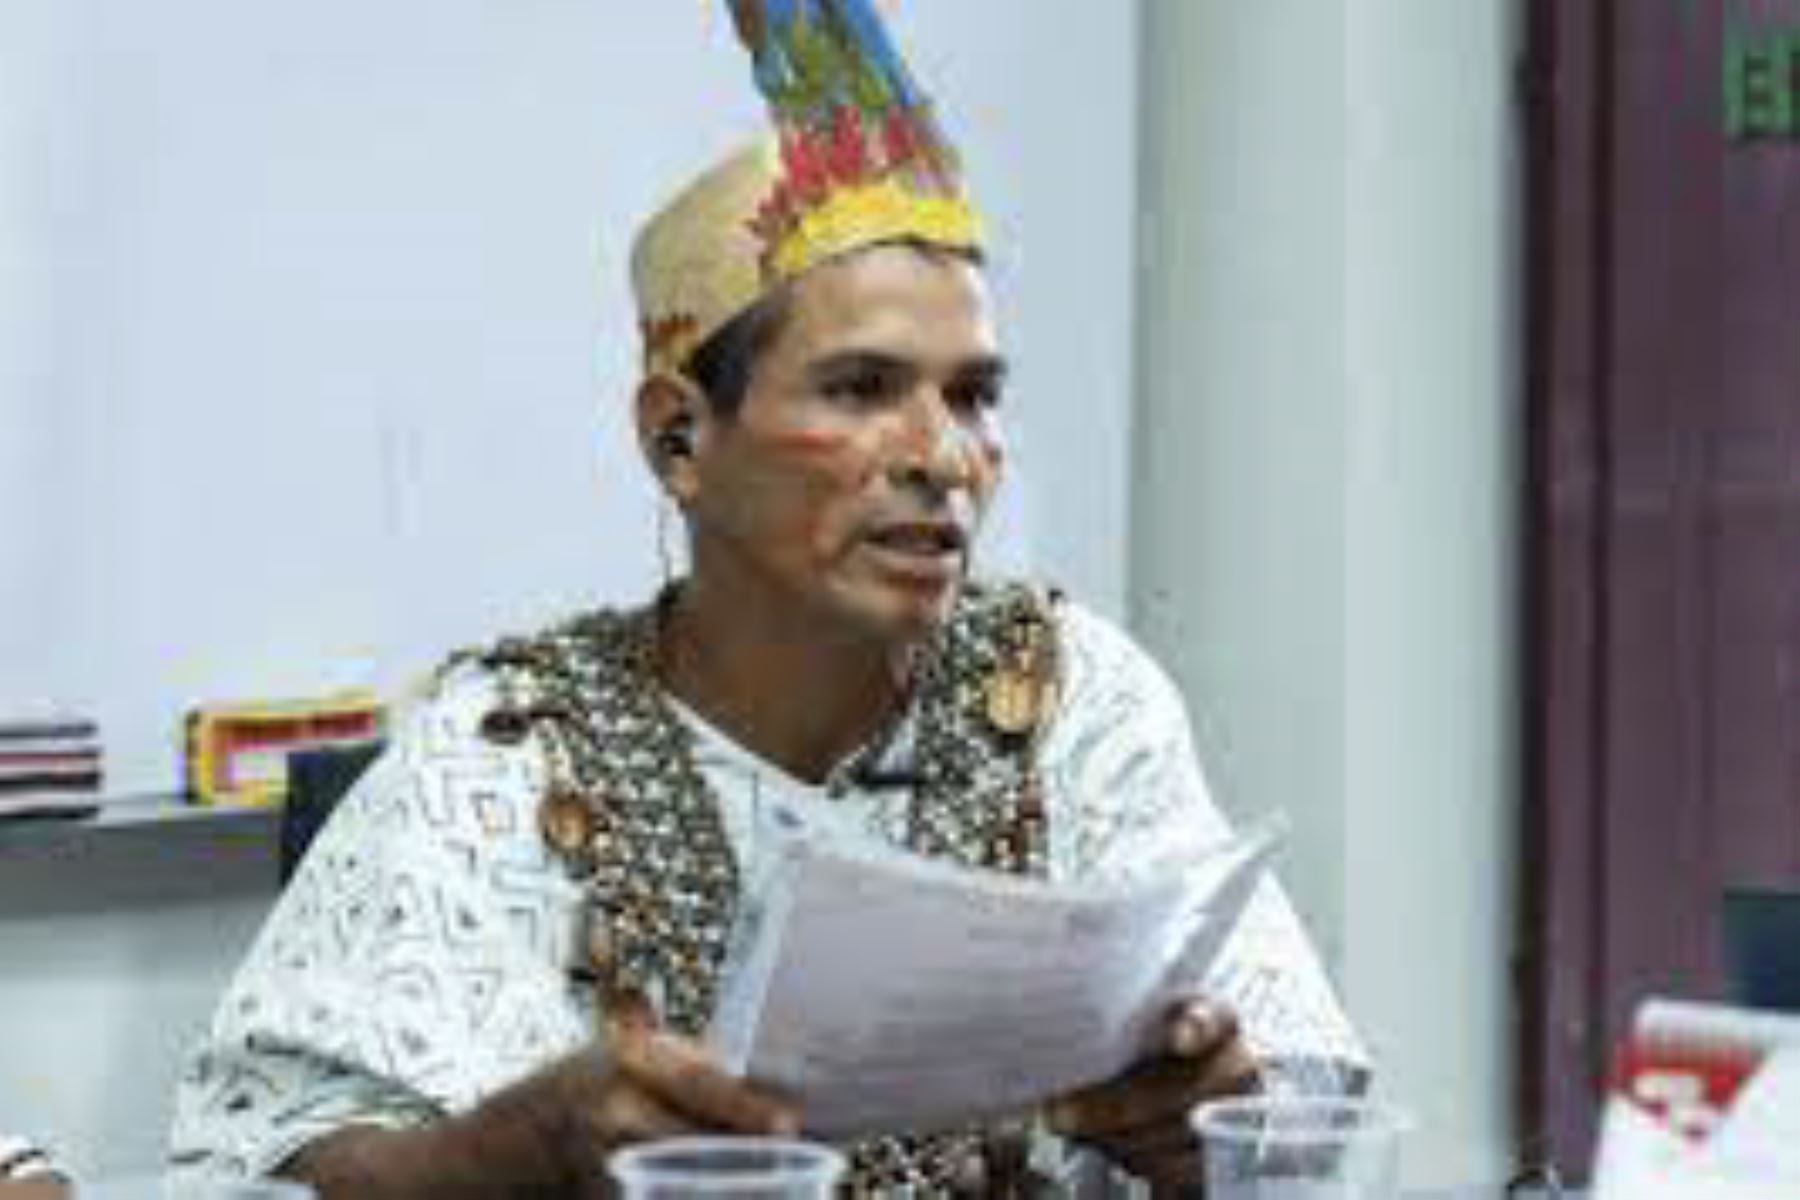 El líder indígena Arbildo Meléndez Grandez fue asesinado el 12 de abril del 2020. Foto: Internet